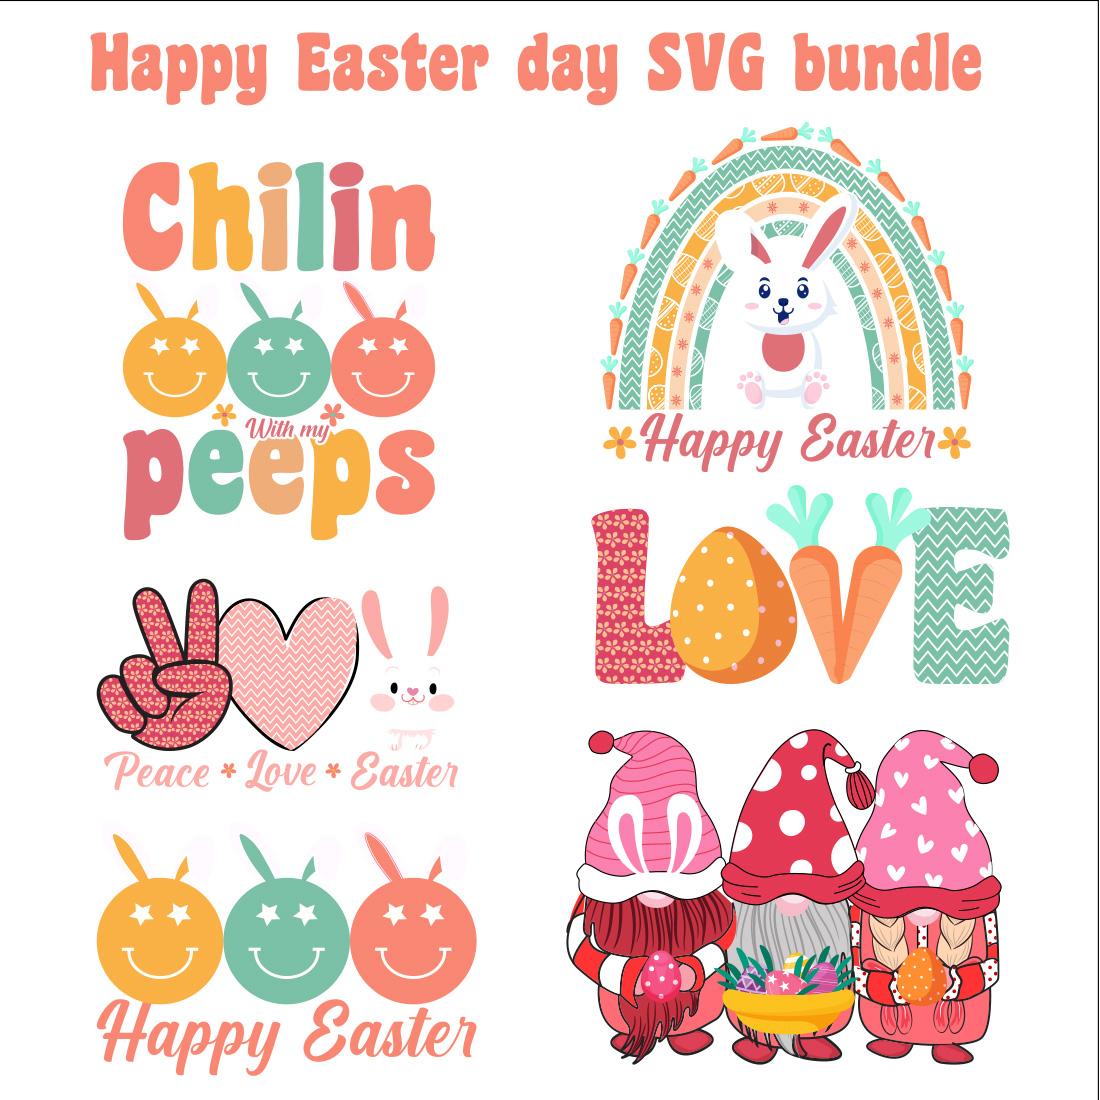 Happy Easter SVG Bundle design preview image.